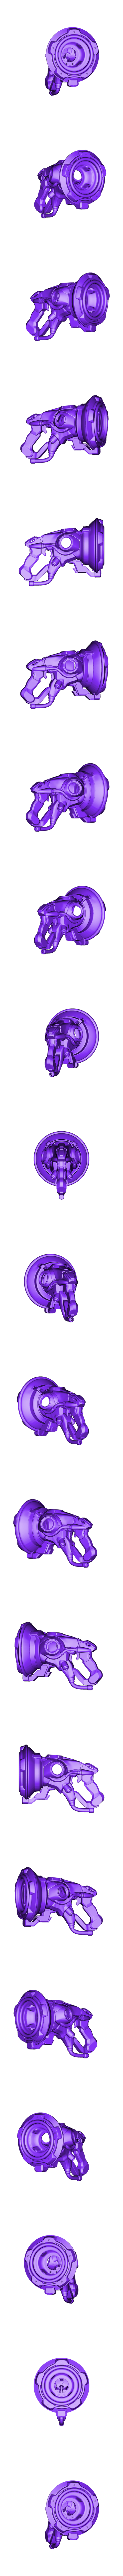 Lucio_all.stl Descargar archivo STL gratis Overwatch Lucio Blaster • Diseño para la impresora 3D, Adafruit